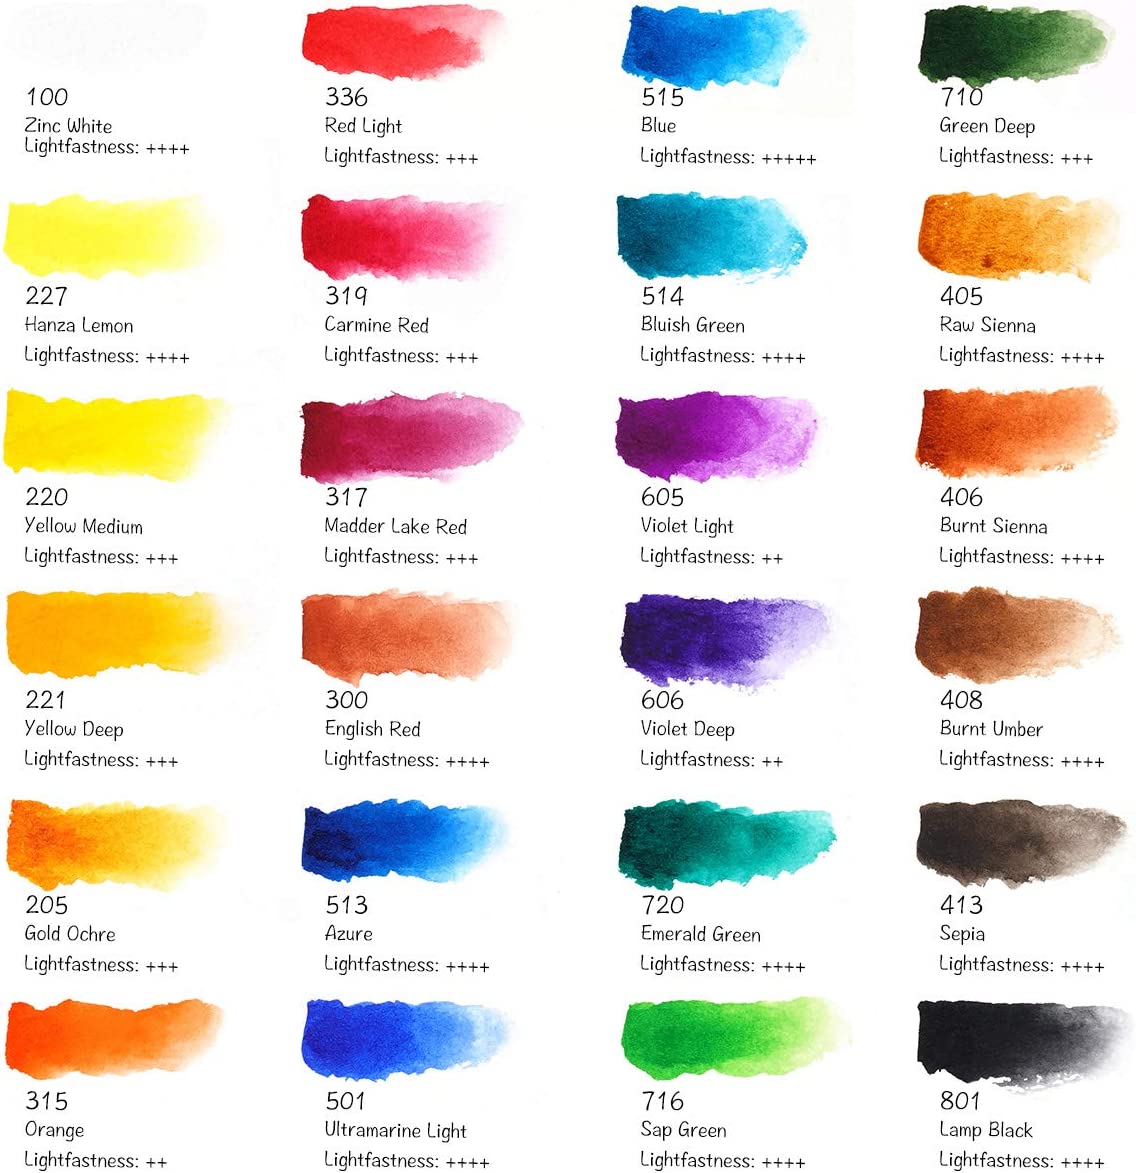 Paul Rubens Aquarellfarben-Set „24 Vivid Colors“ 